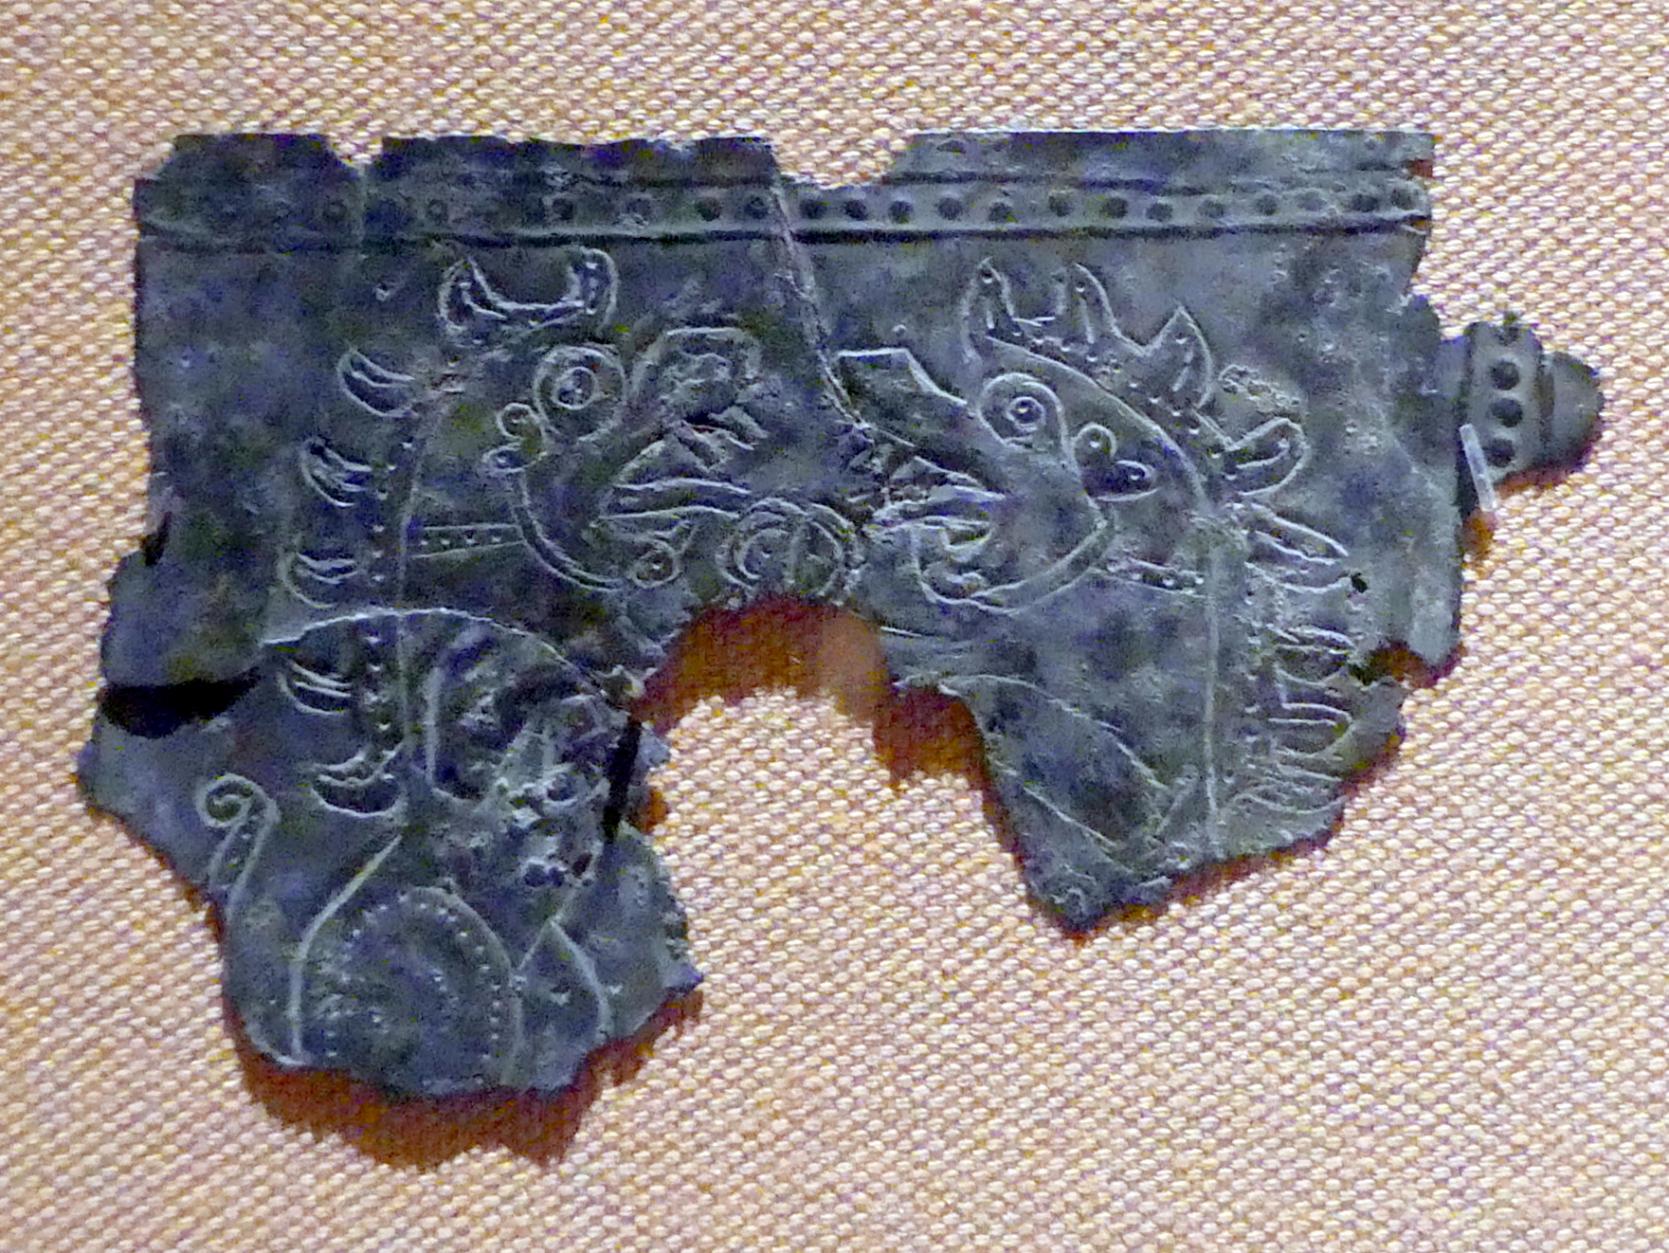 Plakettenfragmente mit fantastischen Kreaturen, Eisenzeit III, 800 - 600 v. Chr., 800 - 600 v. Chr.